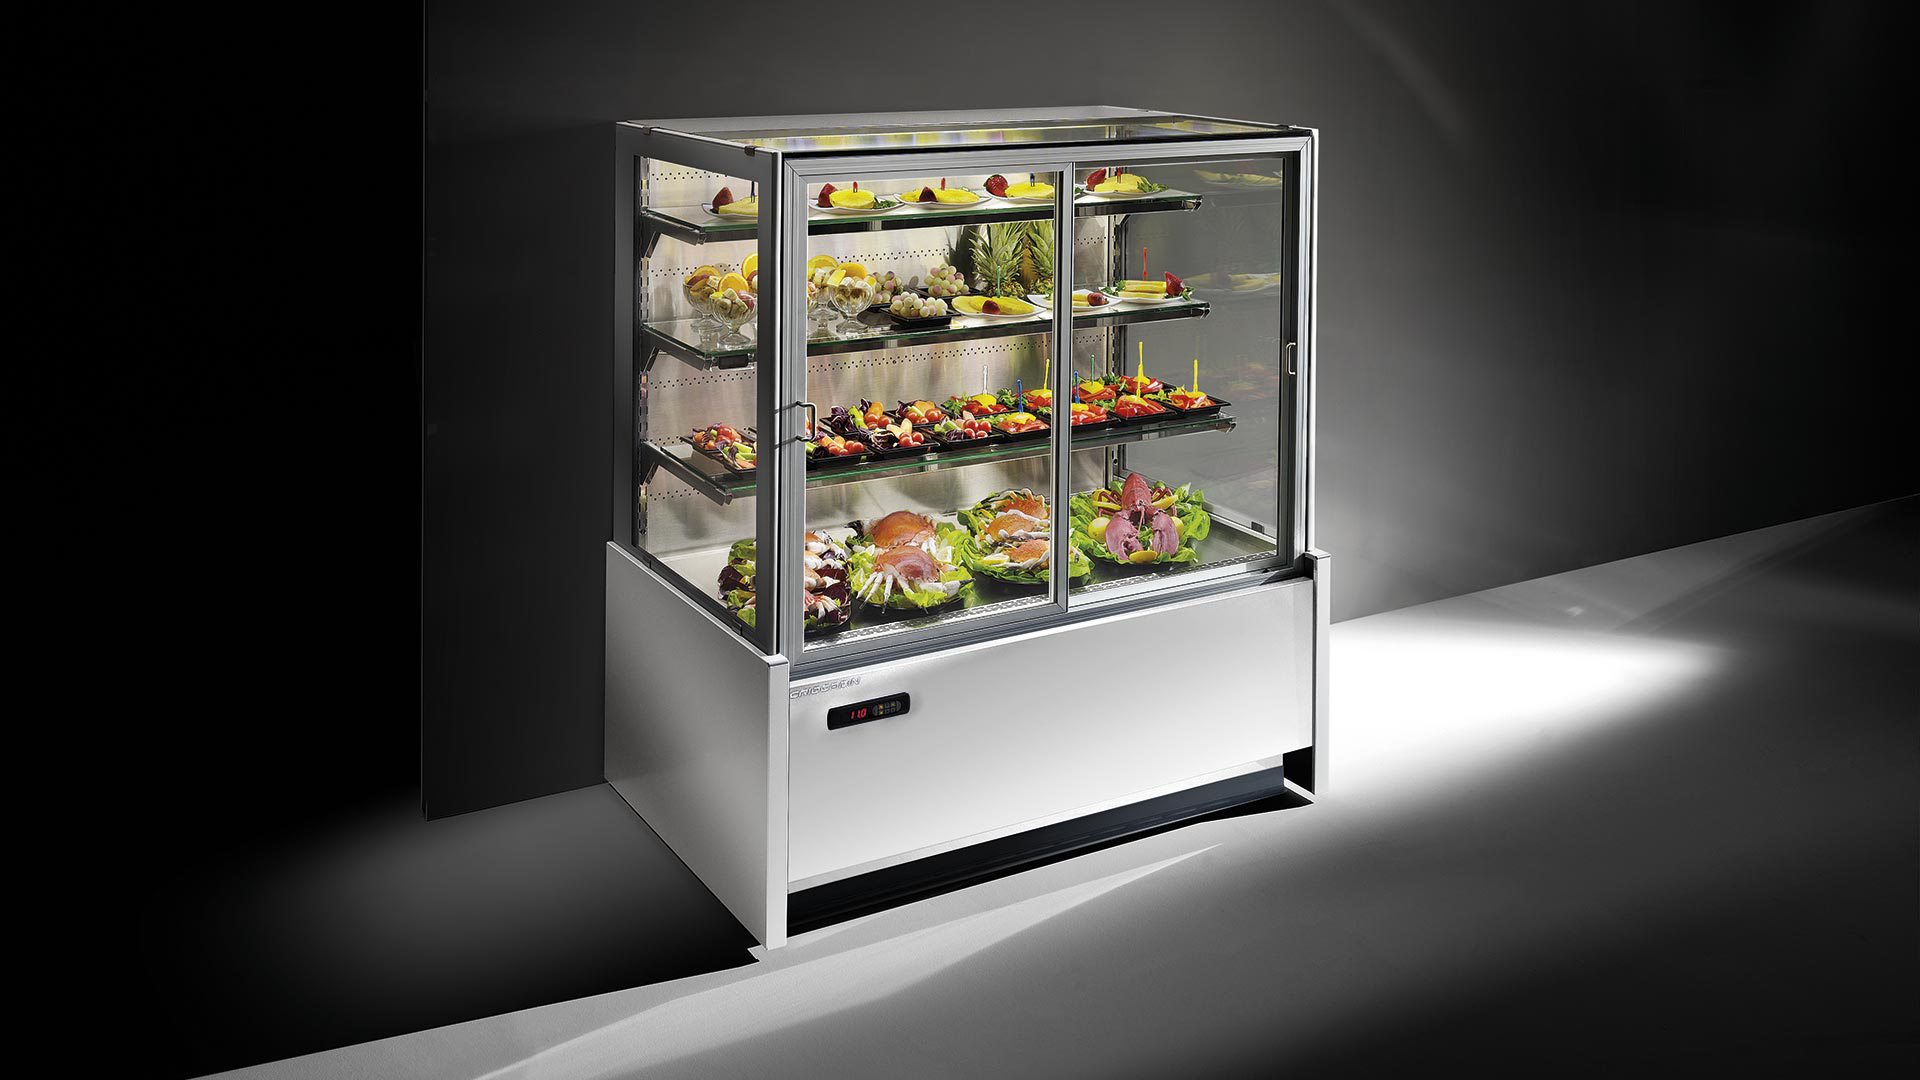 Витрина для хранения. Холодильные витрина модель Parmida esf201. MVF 328001 холодильный терминал вращающаяся витрина. Холодильная витрина для сэндвичей CTST 1200. Витрина холодильная Elisir 340.